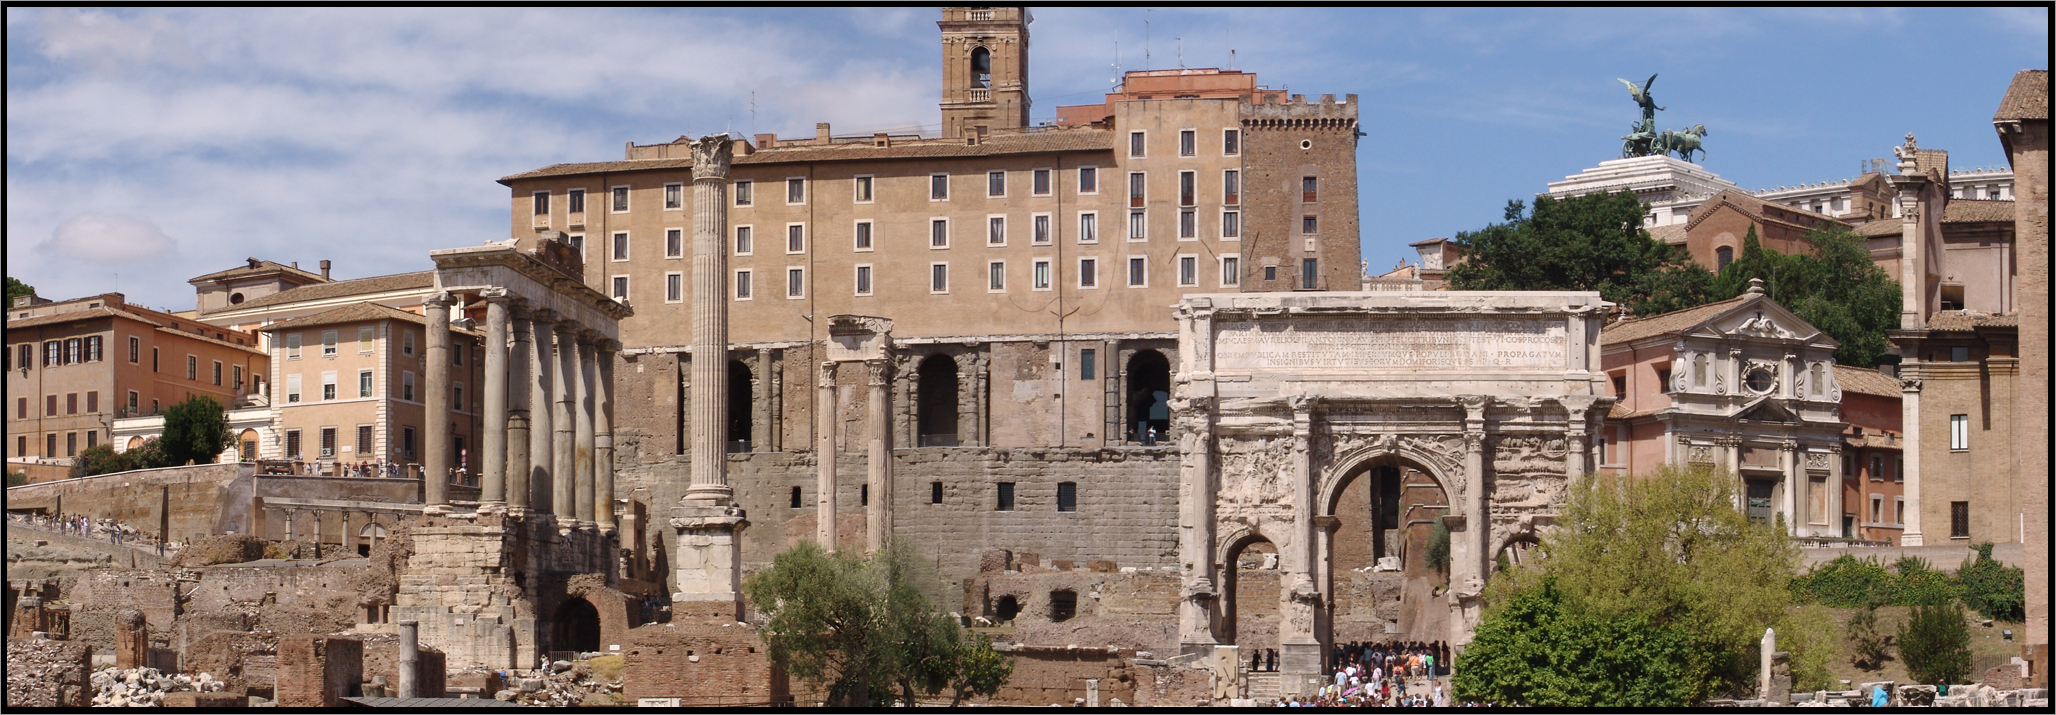 Le Forum Romain, Arc de Septime Sévère, Rome, Italie, Août 2006